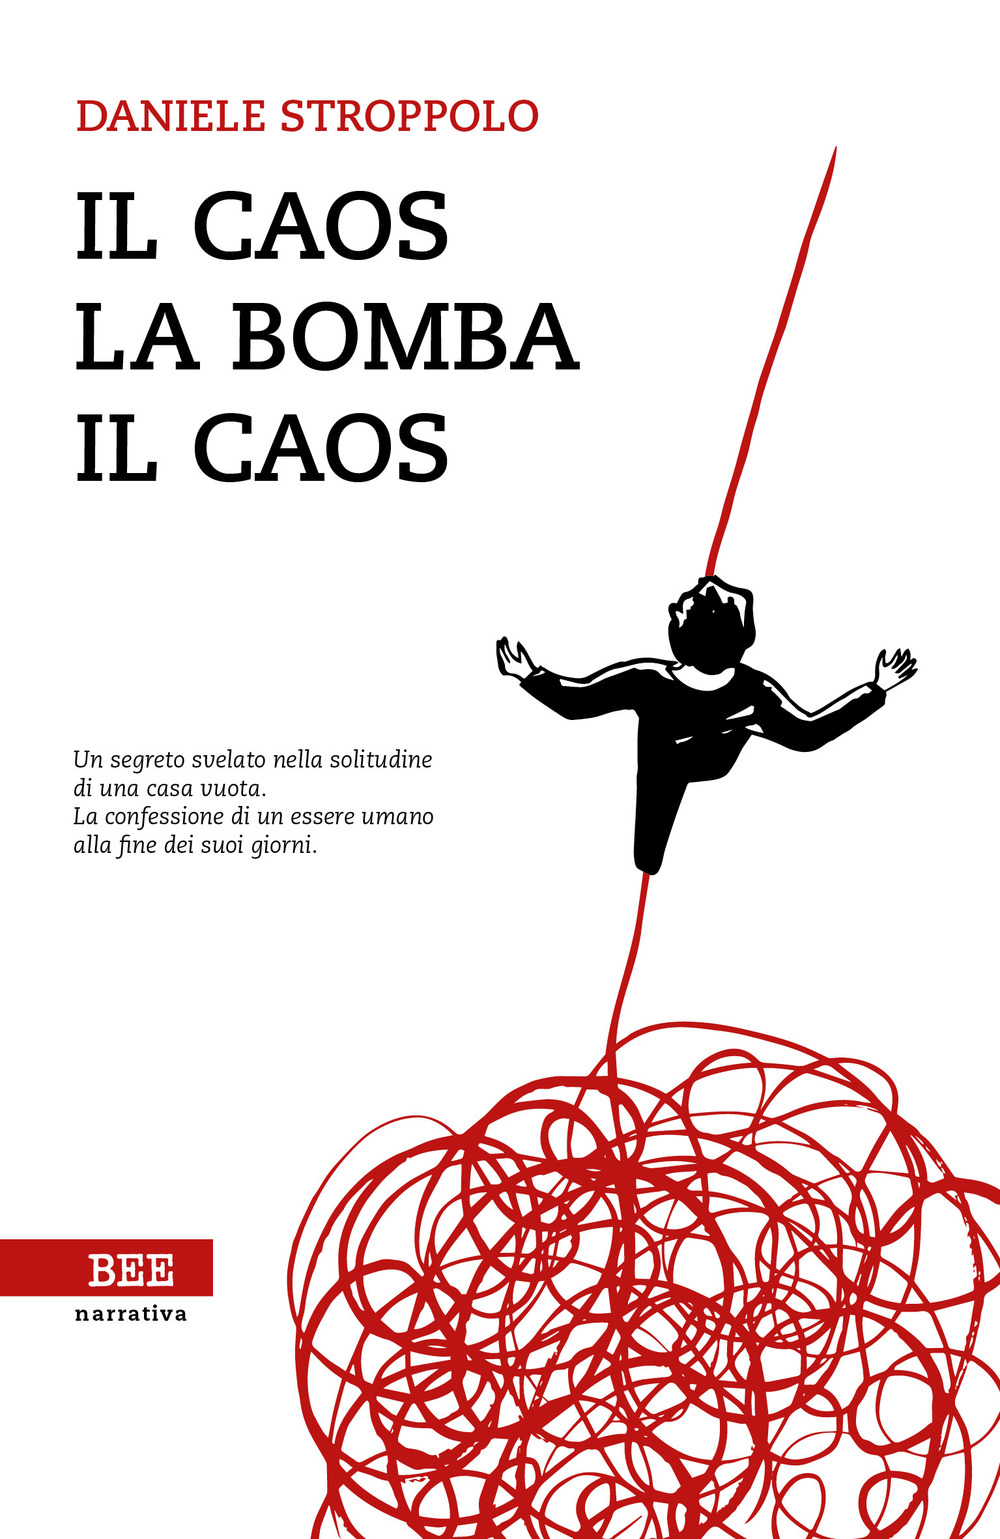 Image of Il caos, la bomba, il caos